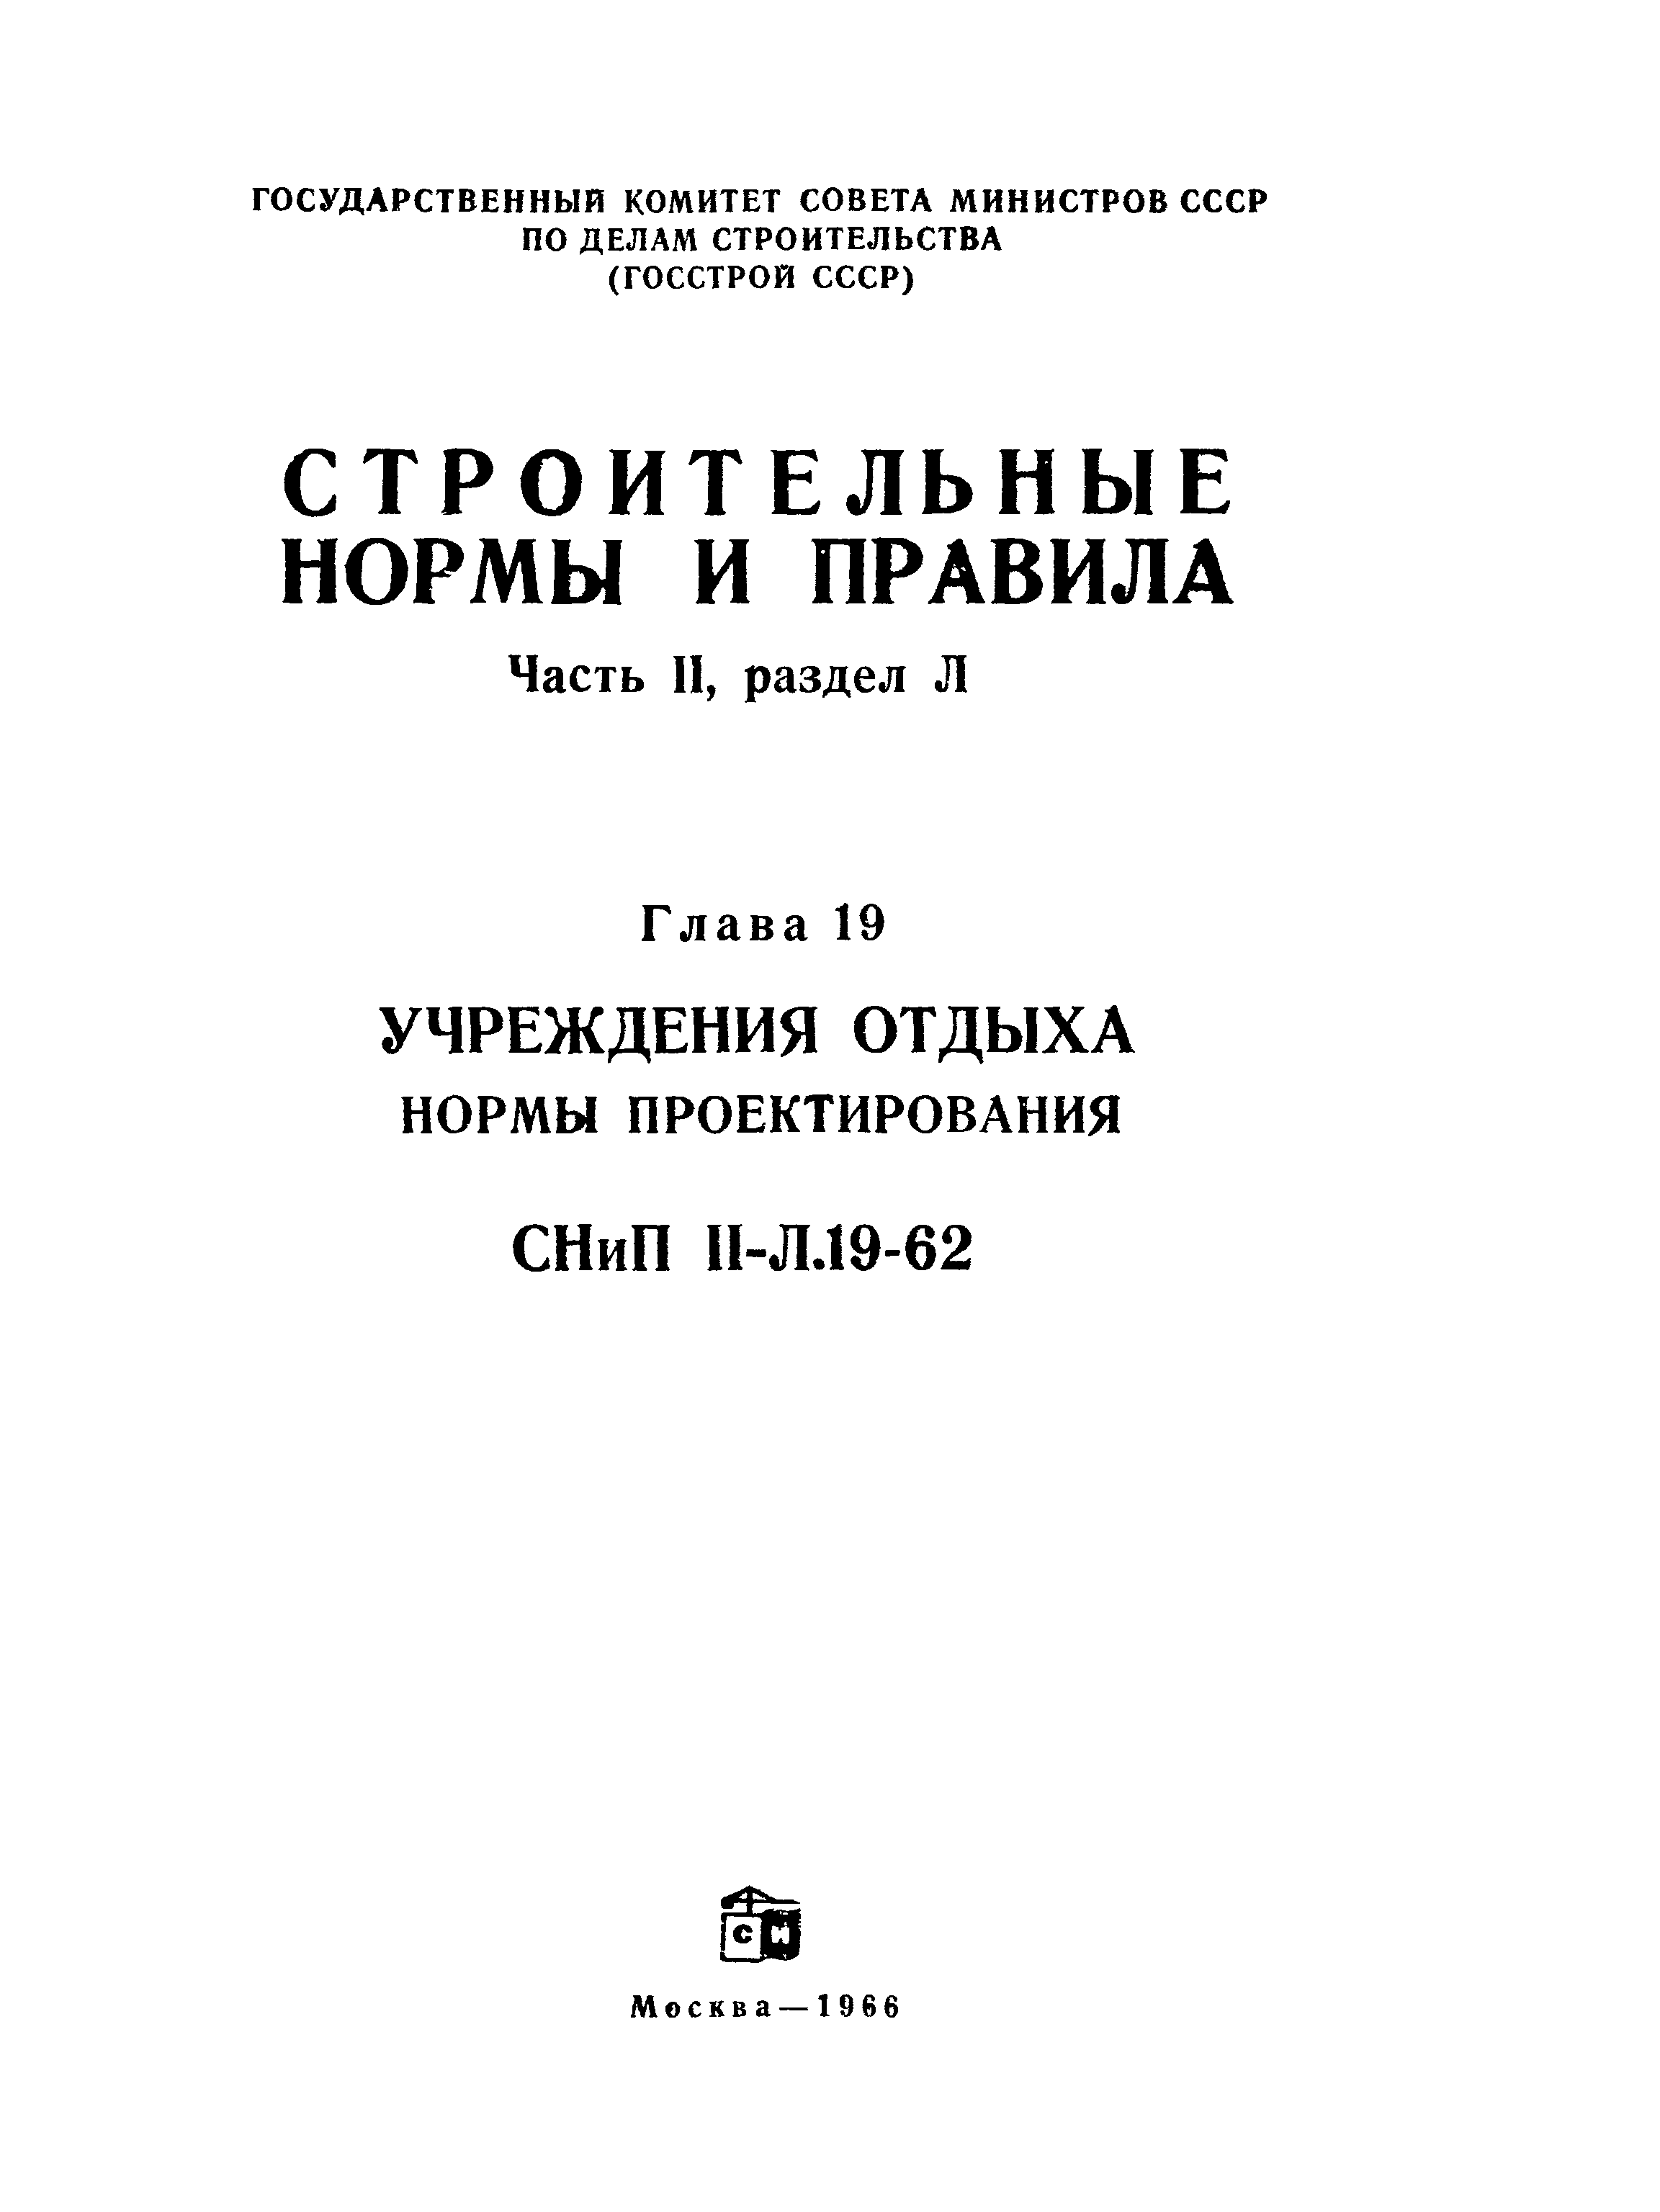 СНиП II-Л.19-62